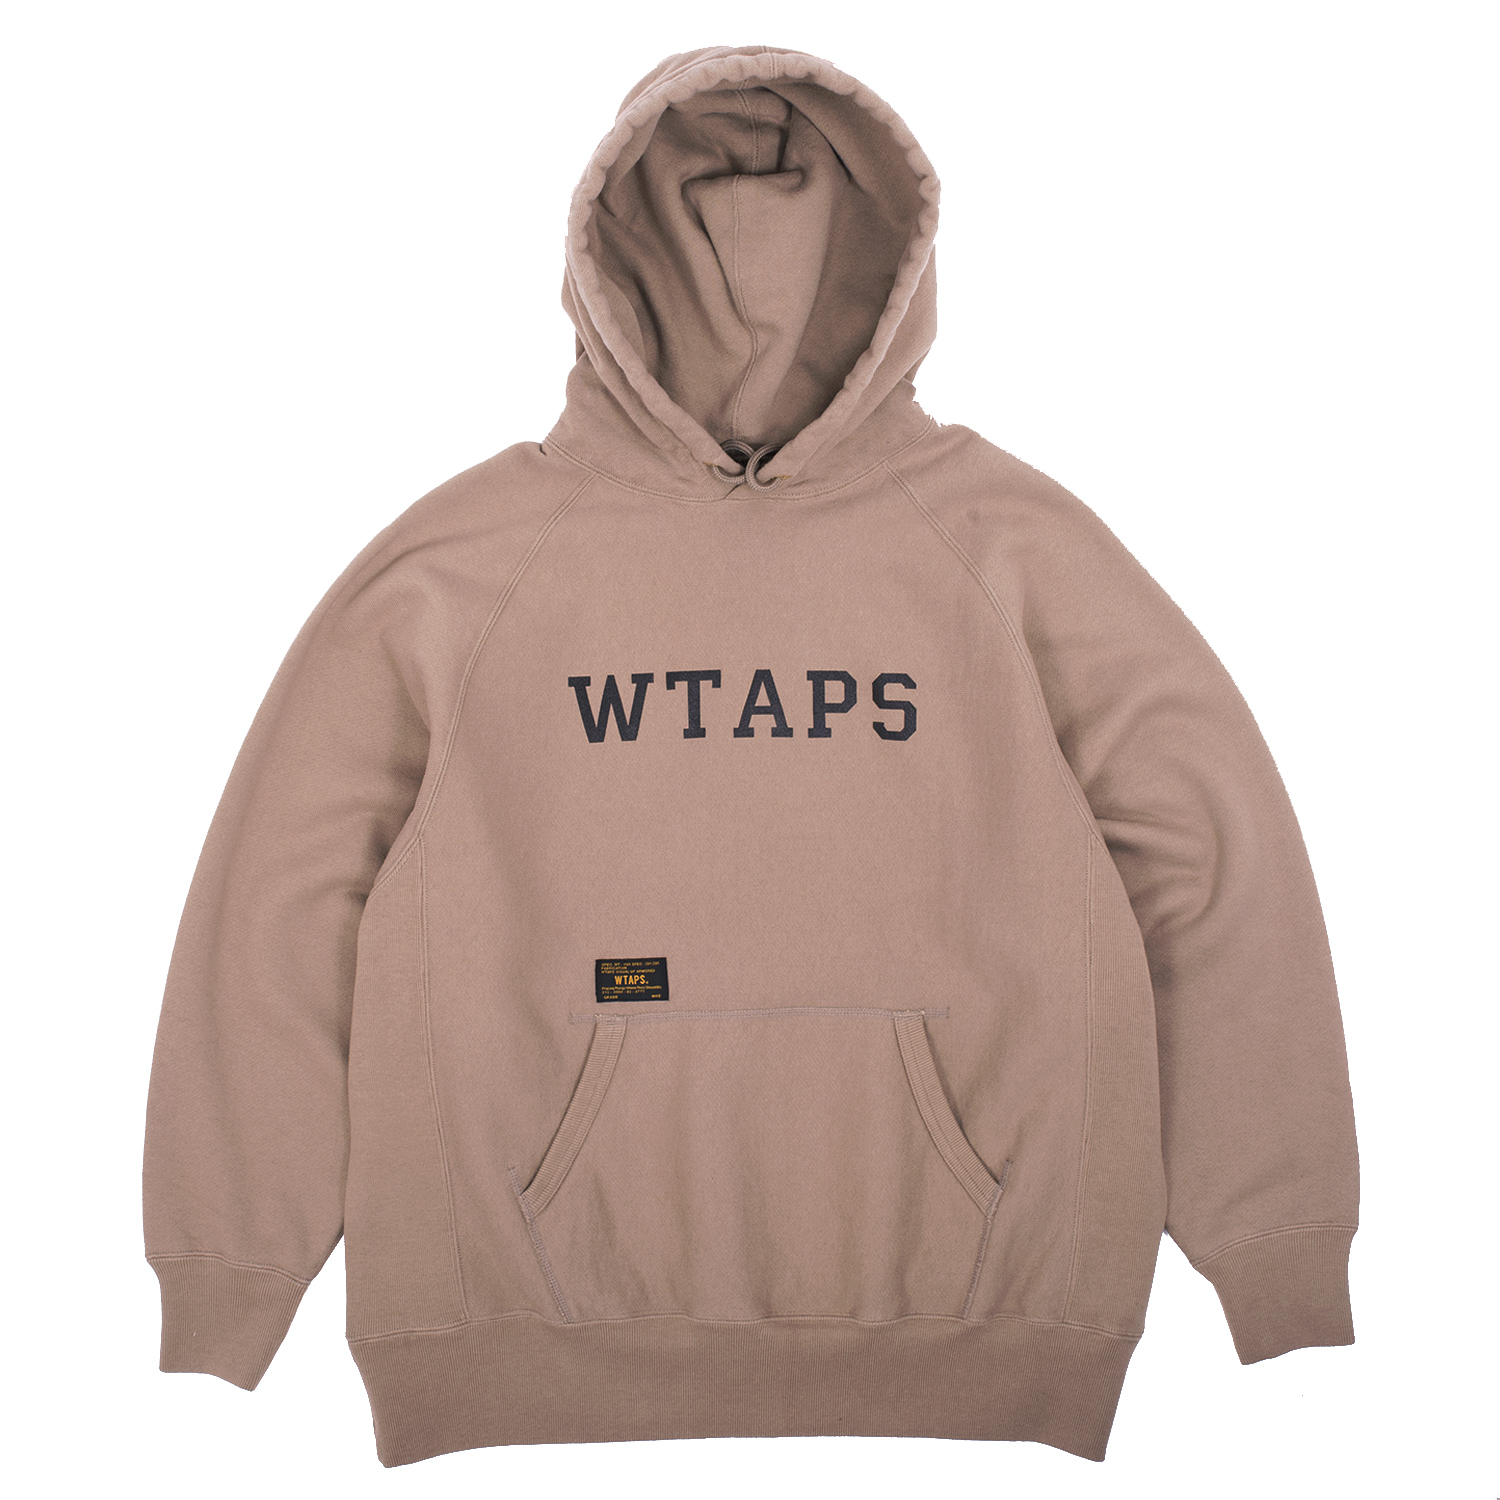 Wtaps Design Hooded Sweatshirt | FIRMAMENT - Berlin Renaissance